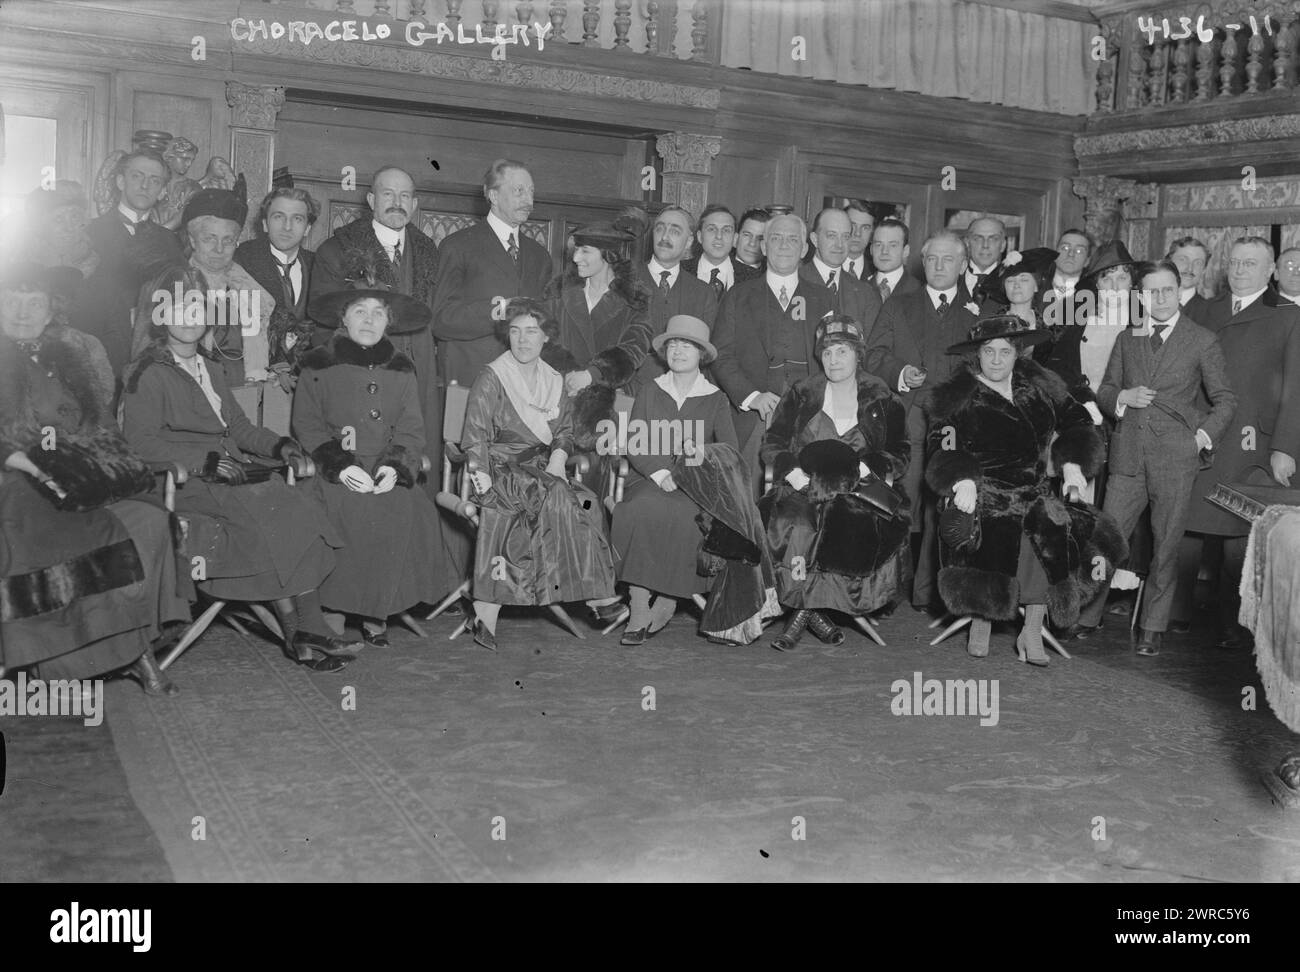 Choracelo, d. h. Choralcelo Gallery, Foto zeigt eine Gruppe von Personen, möglicherweise die New York Electrical Society, die sich in den Choralcelo Galleries, 17 East 40th Street, New York City, zwischen ca. 1915 und ca. 1920, Glasnegative, 1 negativ: Glas Stockfoto